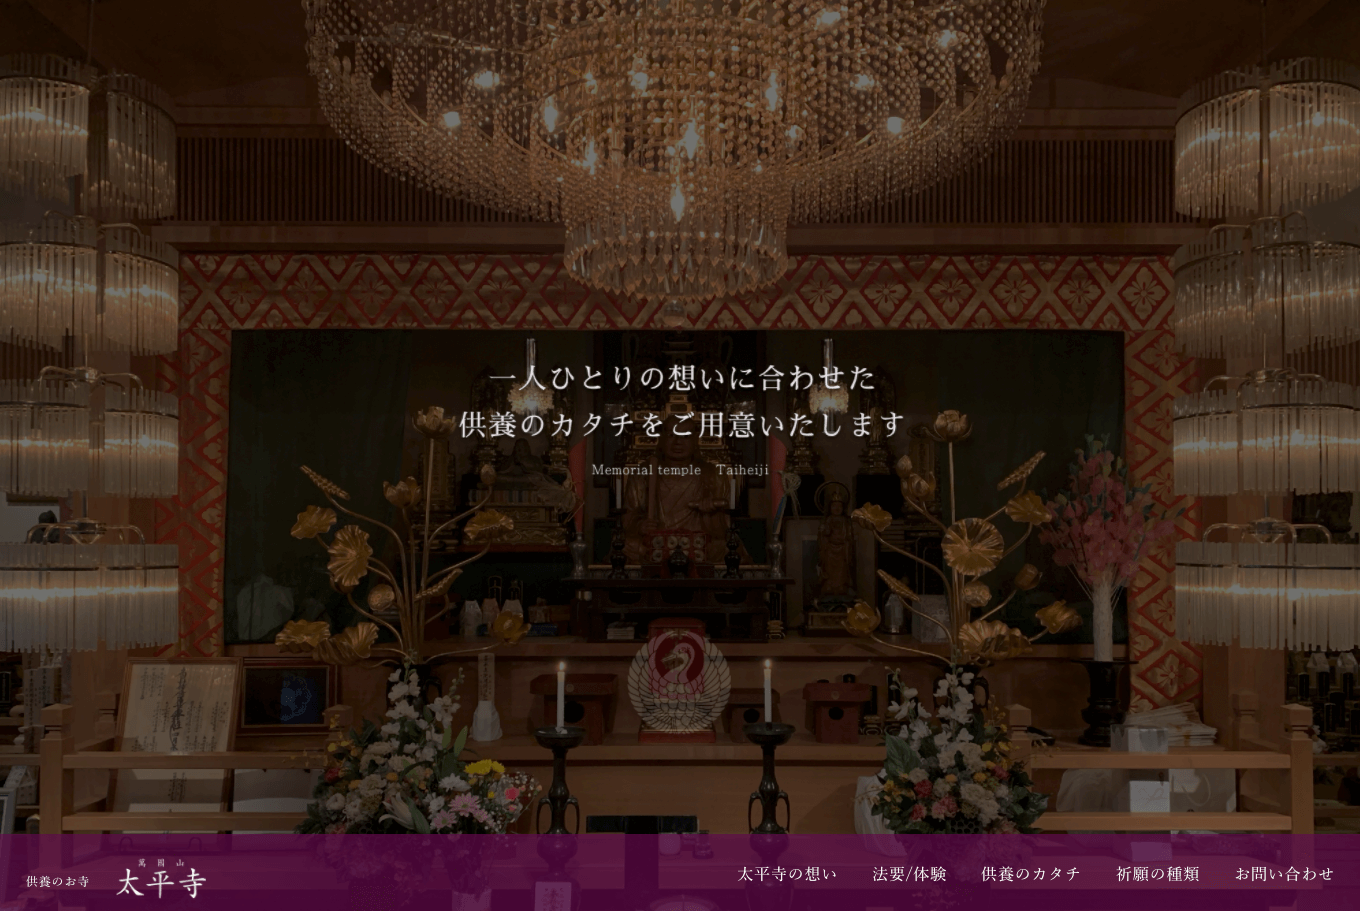 太平寺(大阪市住吉区)公式サイトがリリースされました。